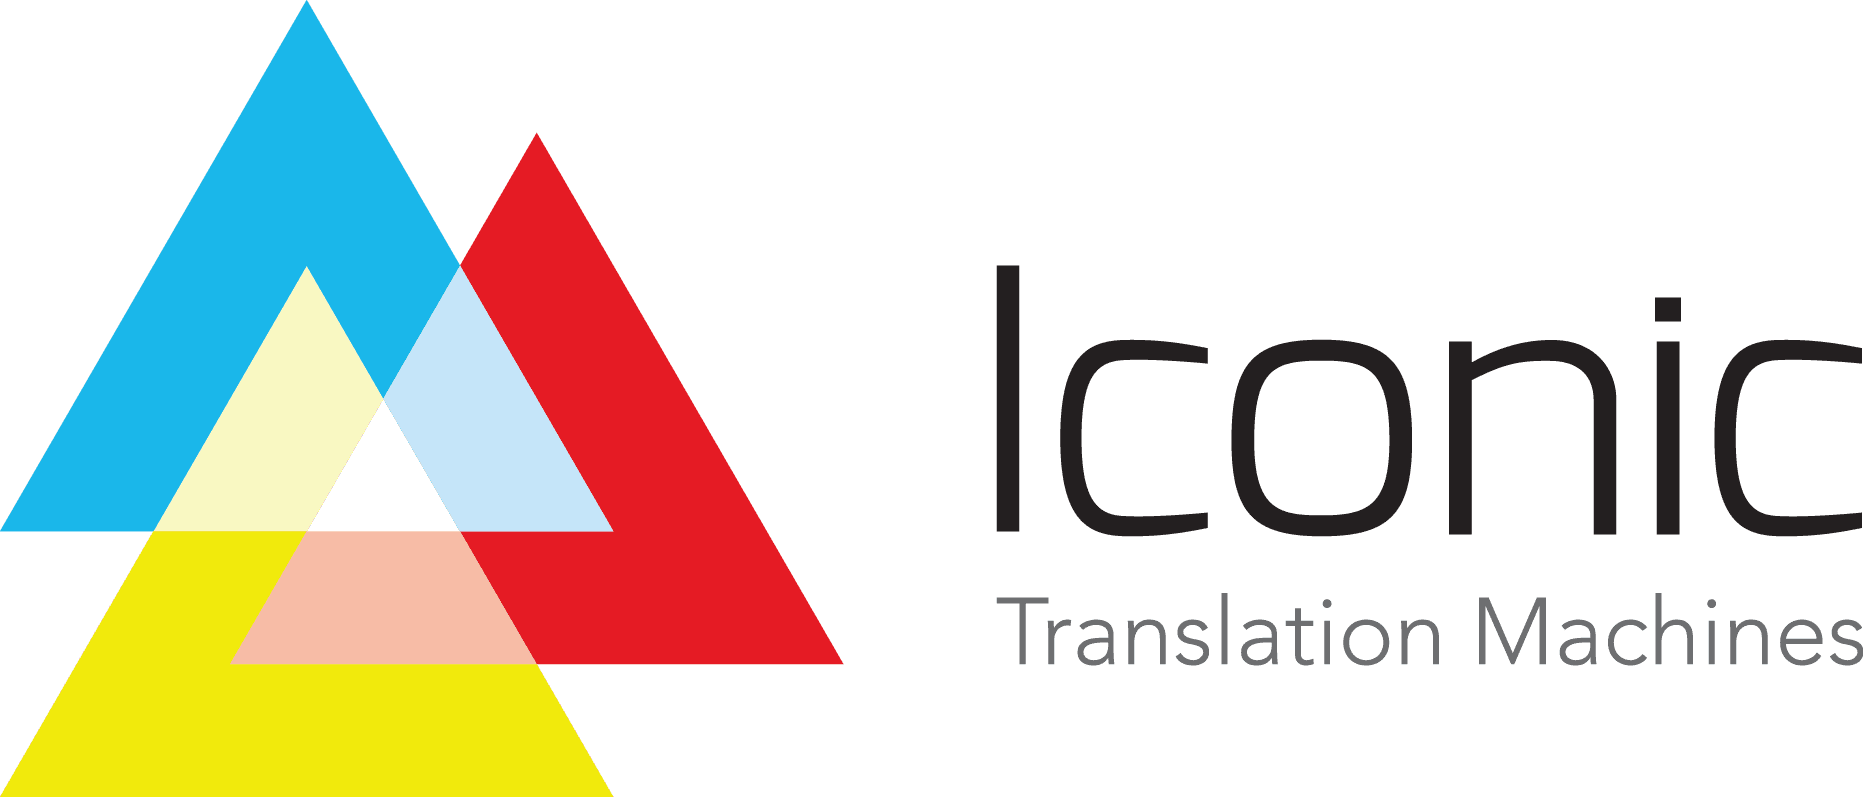 Iconic Translation Machines